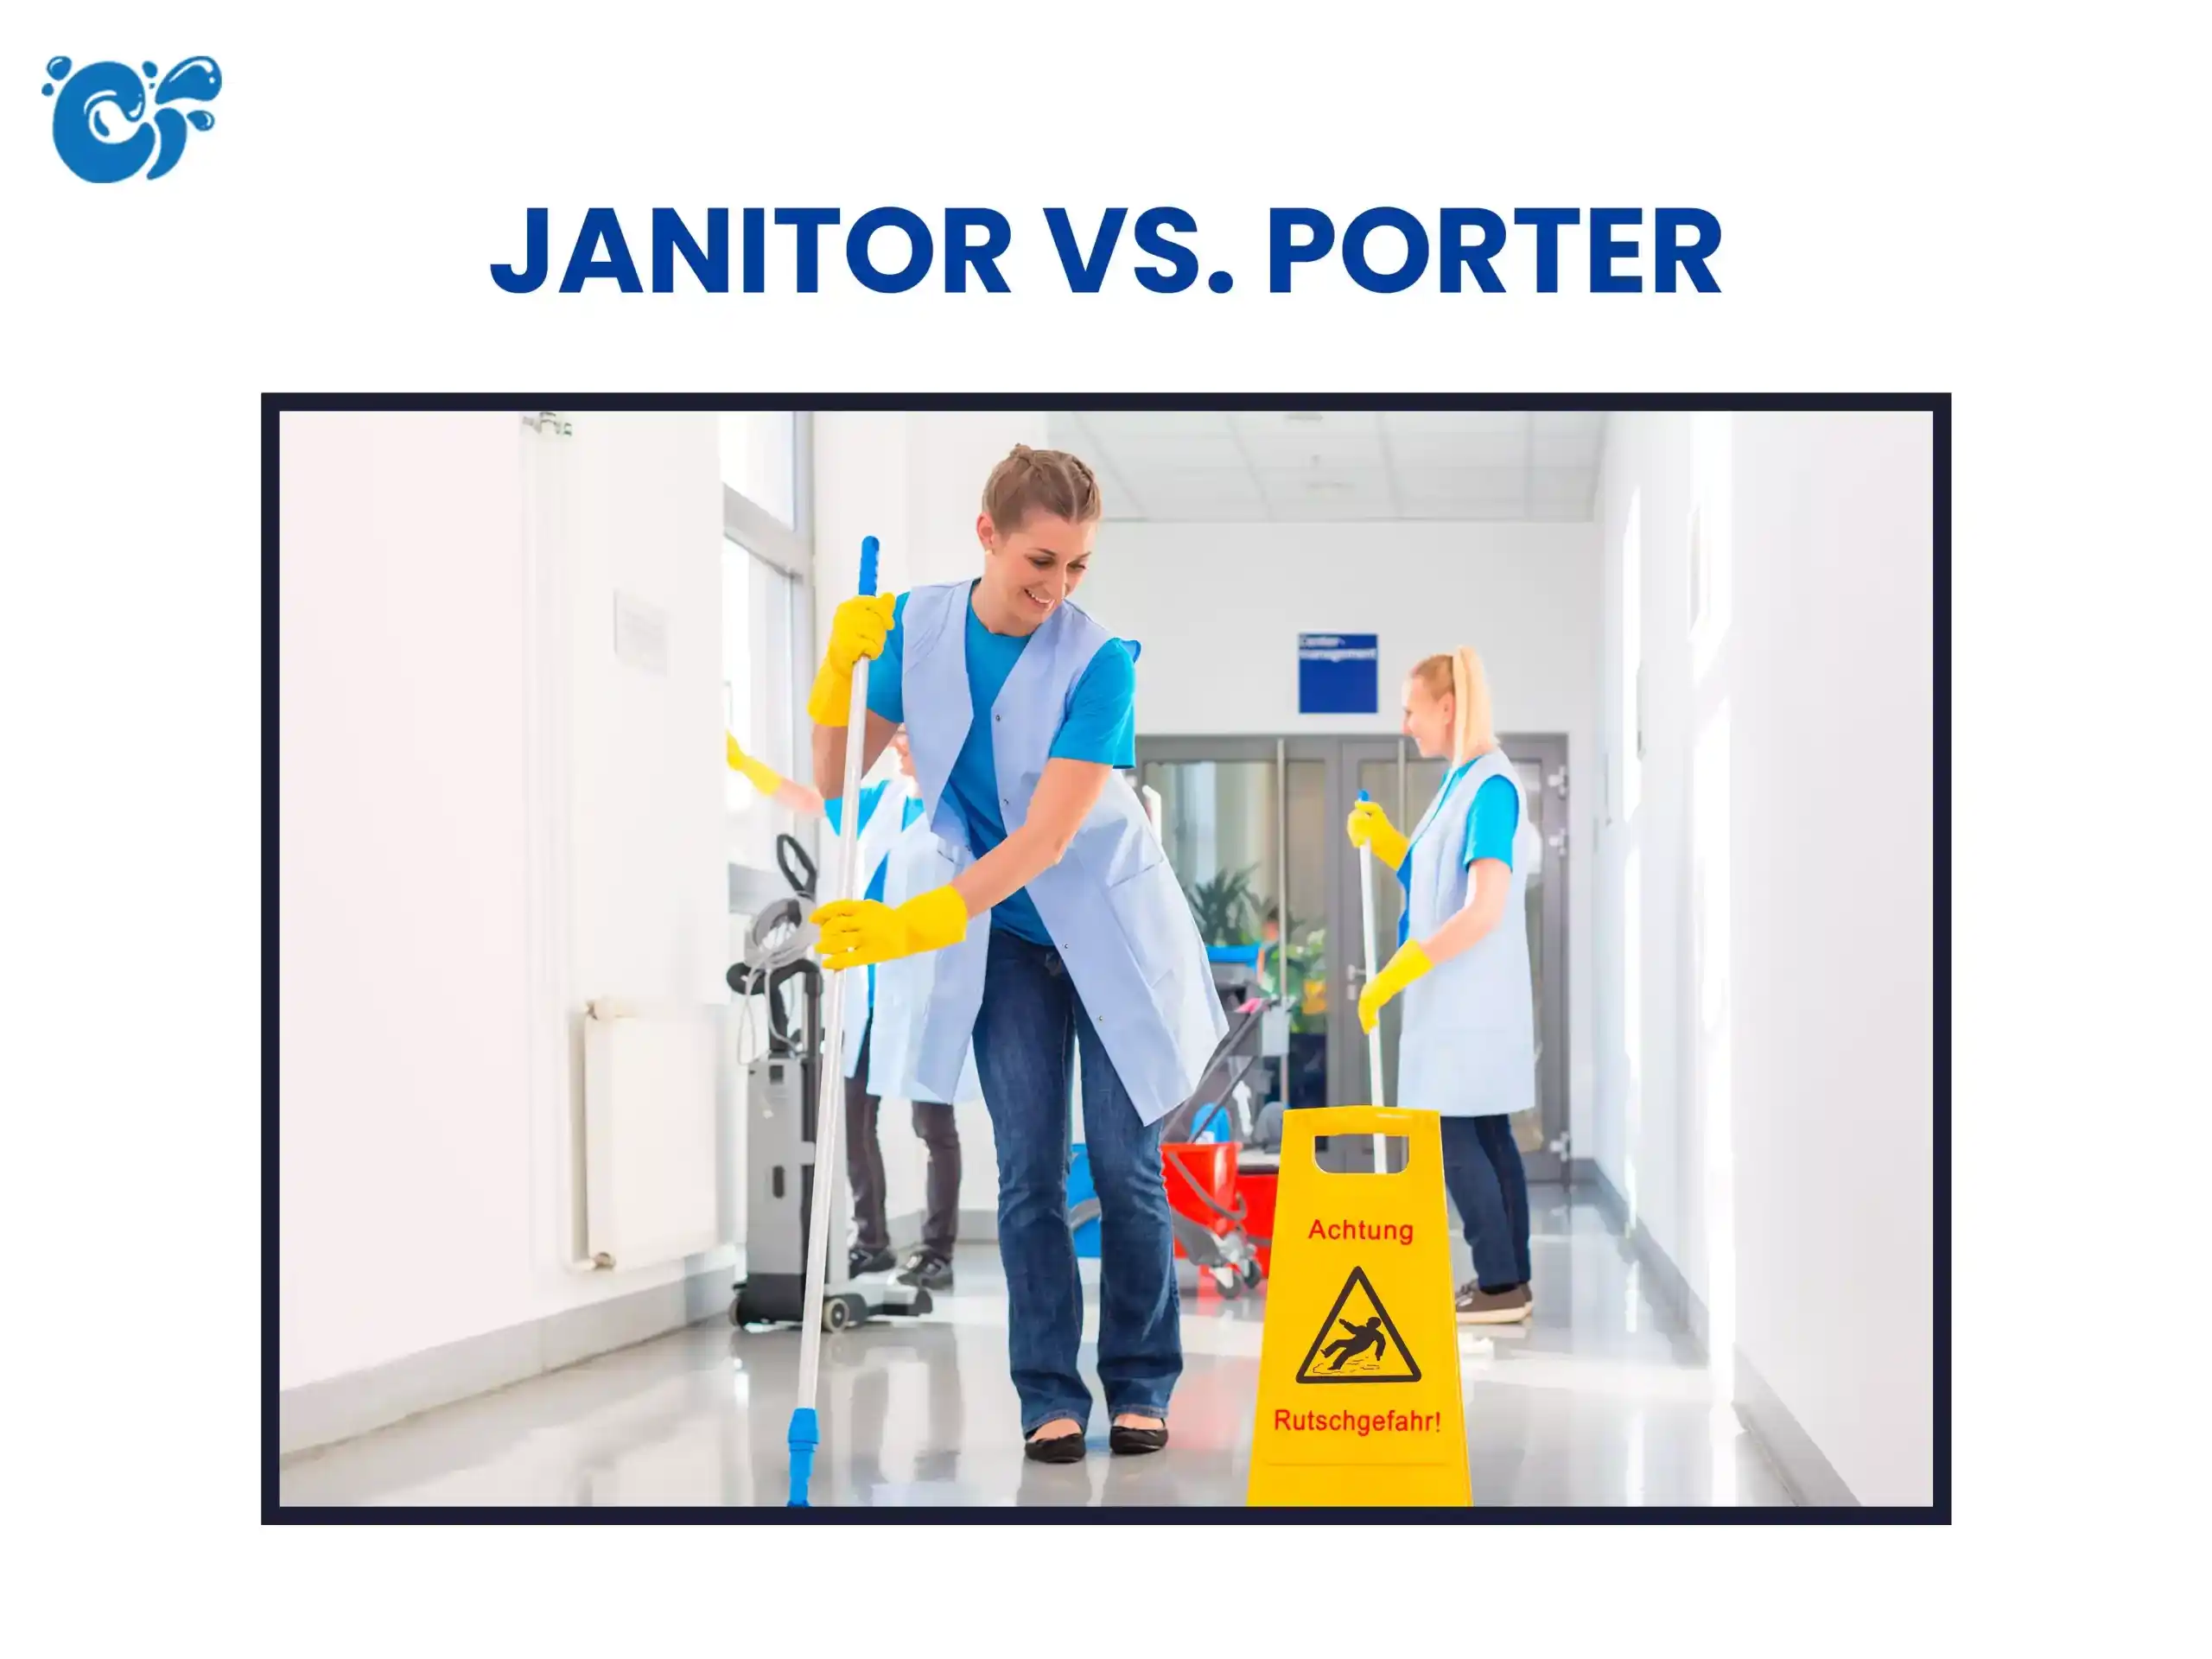 Janitor vs. Porter